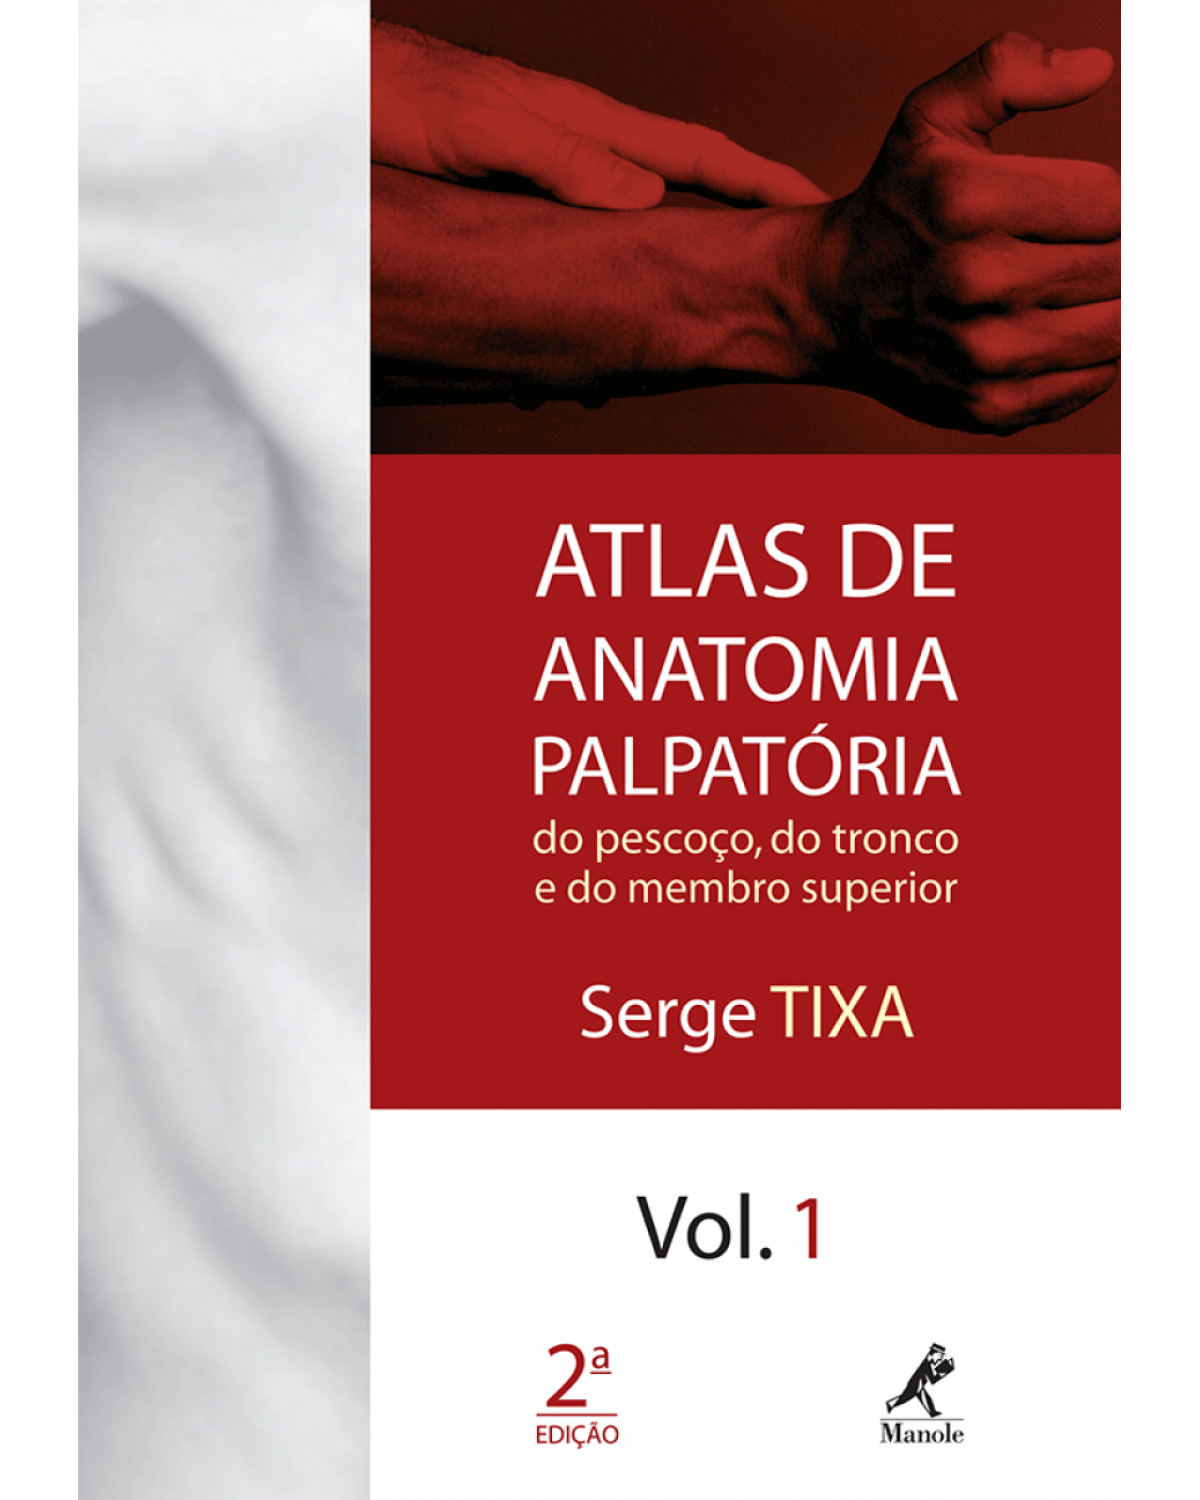 Atlas de anatomia palpatória do pescoço, do tronco e do membro superior - Volume 1:  - 2ª Edição | 2009